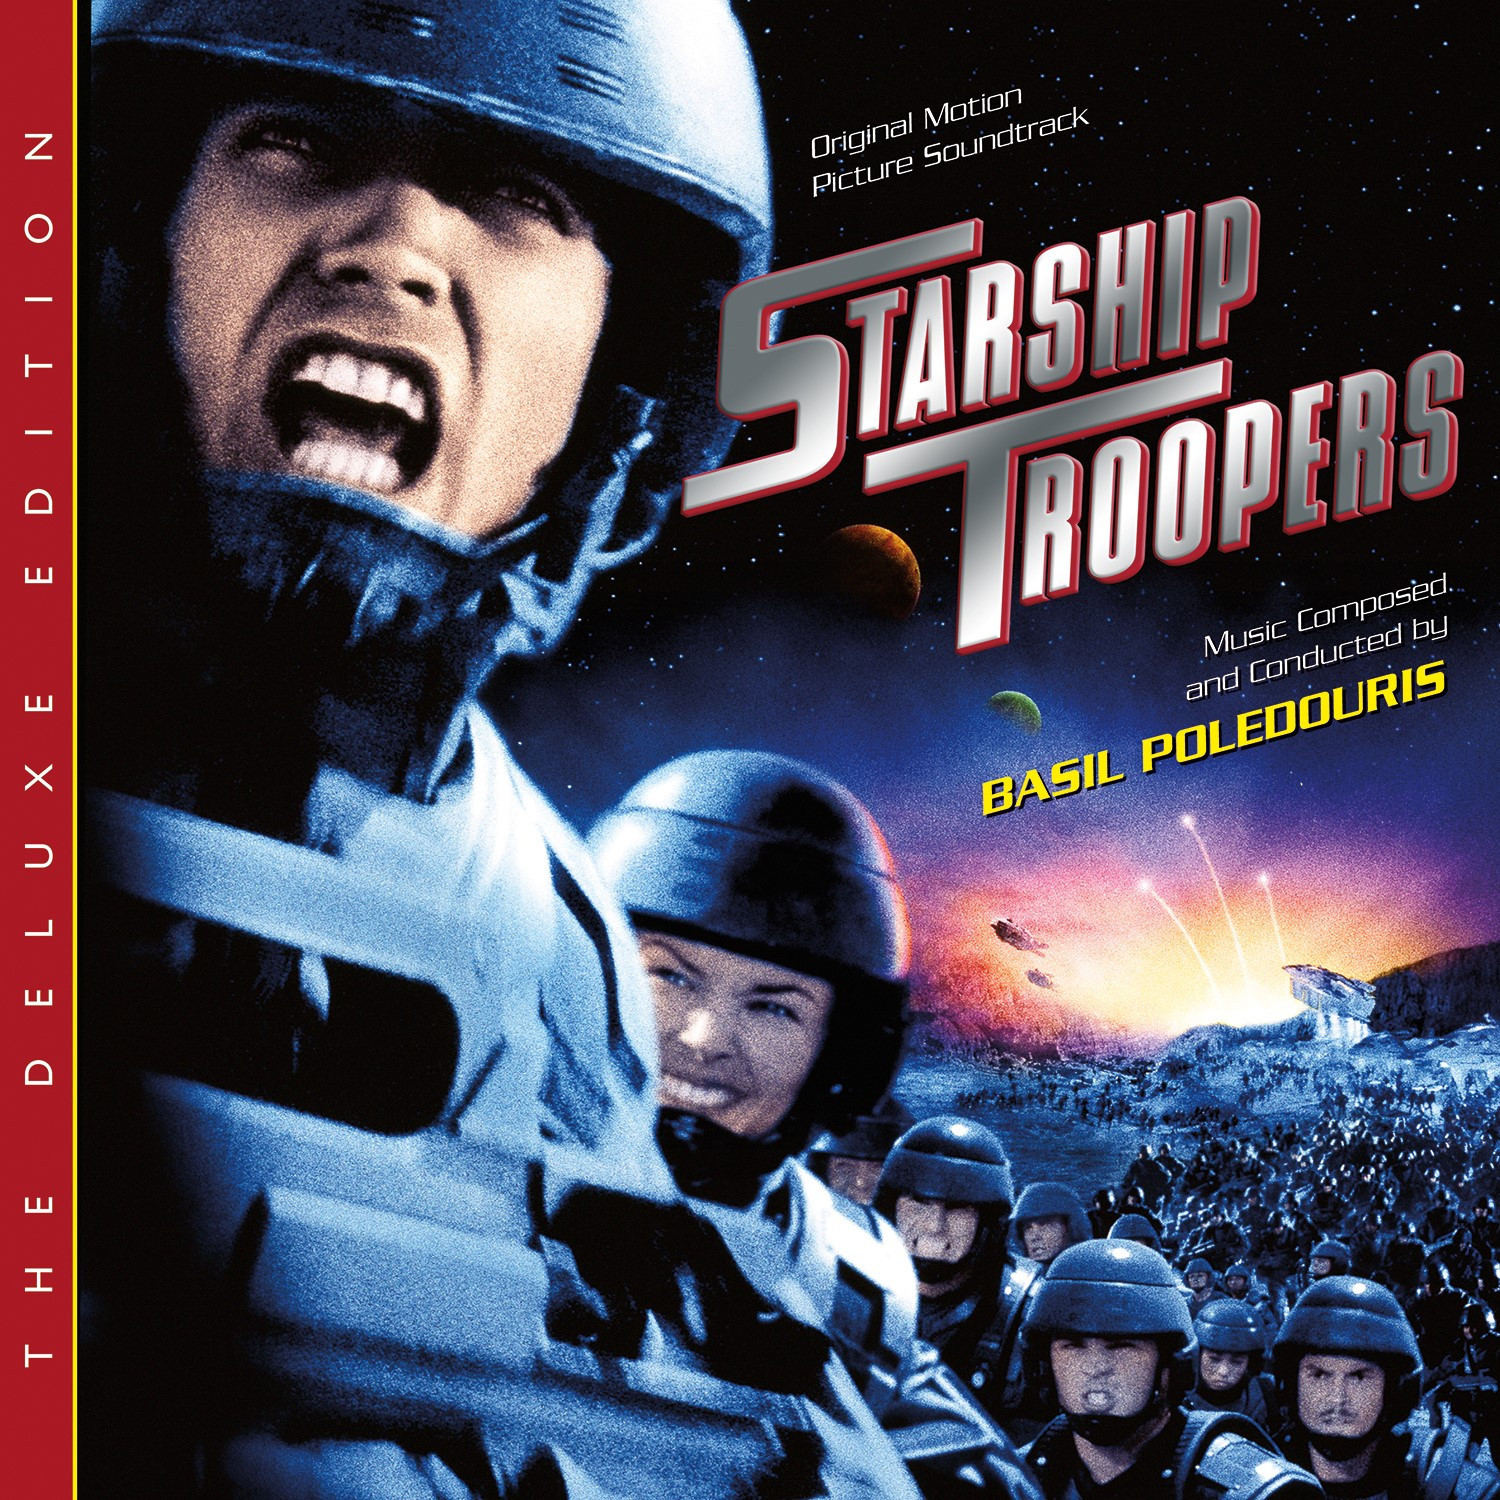 Starship Troopers (2CD), Detalles